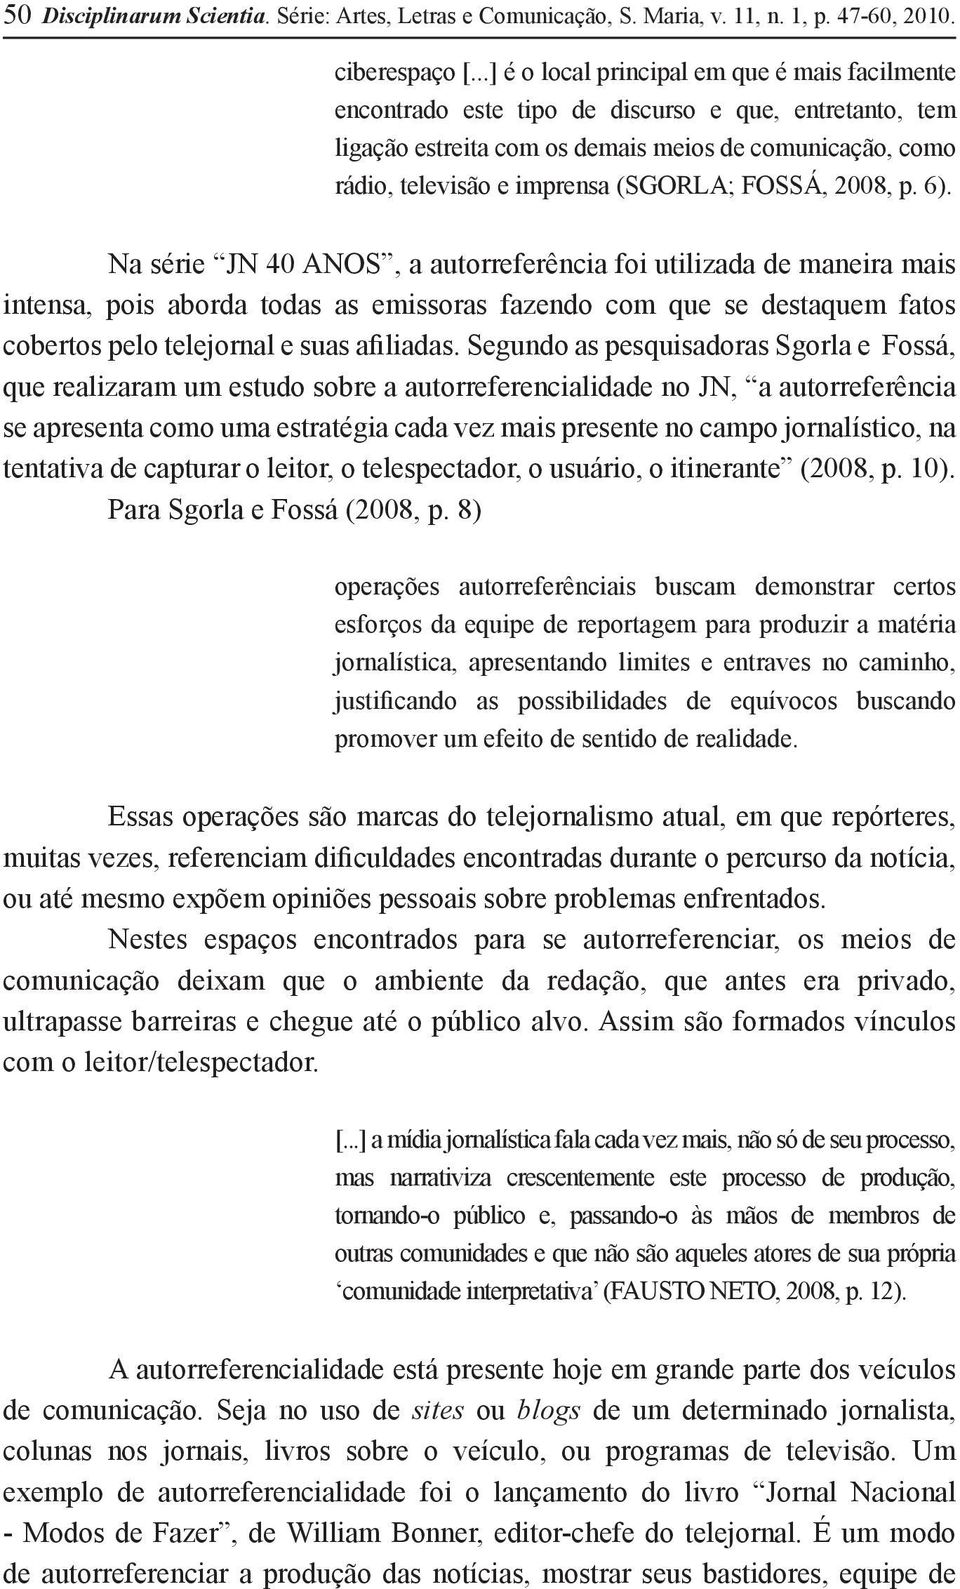 FOSSÁ, 2008, p. 6).